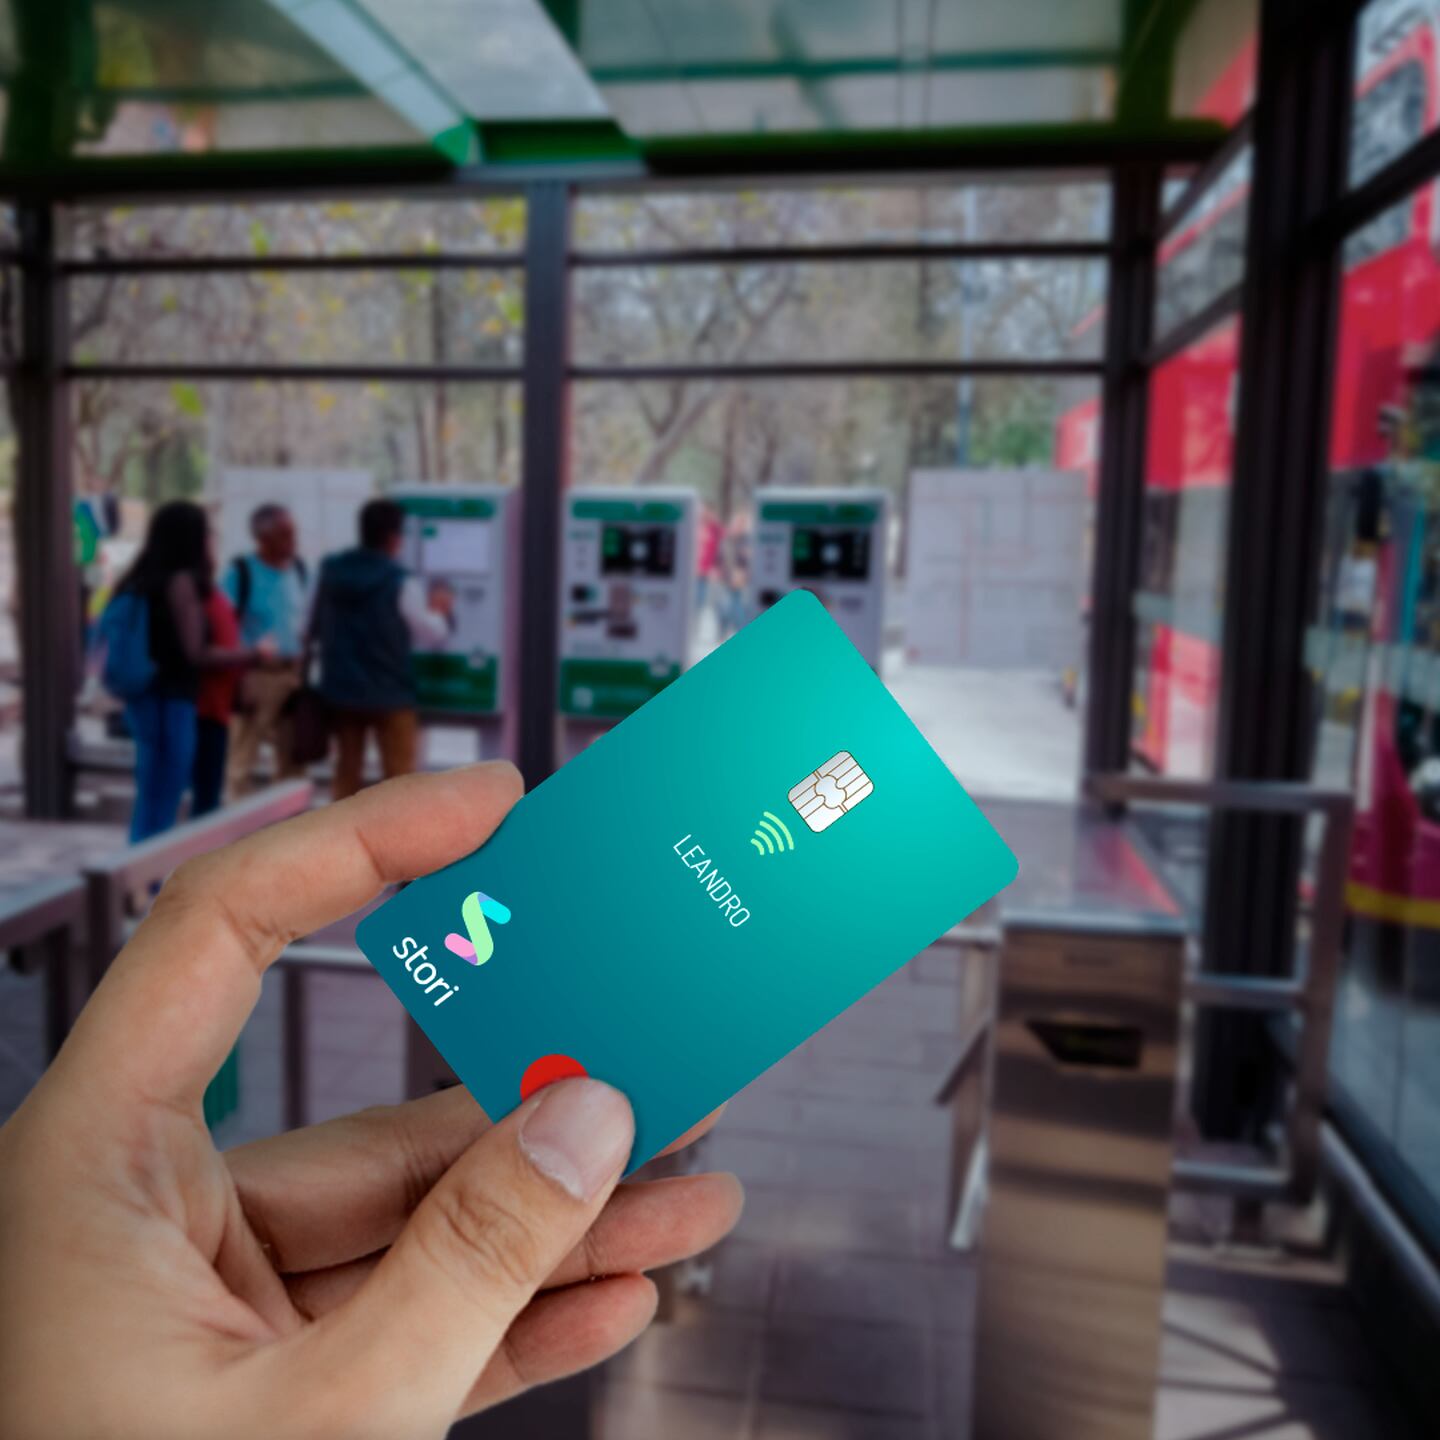 Stori ofrece tarjetas de crédito que comienzan con límite de crédito desde US$50 por mes, lo que facilita a quienes no tienen crédito establecerlo